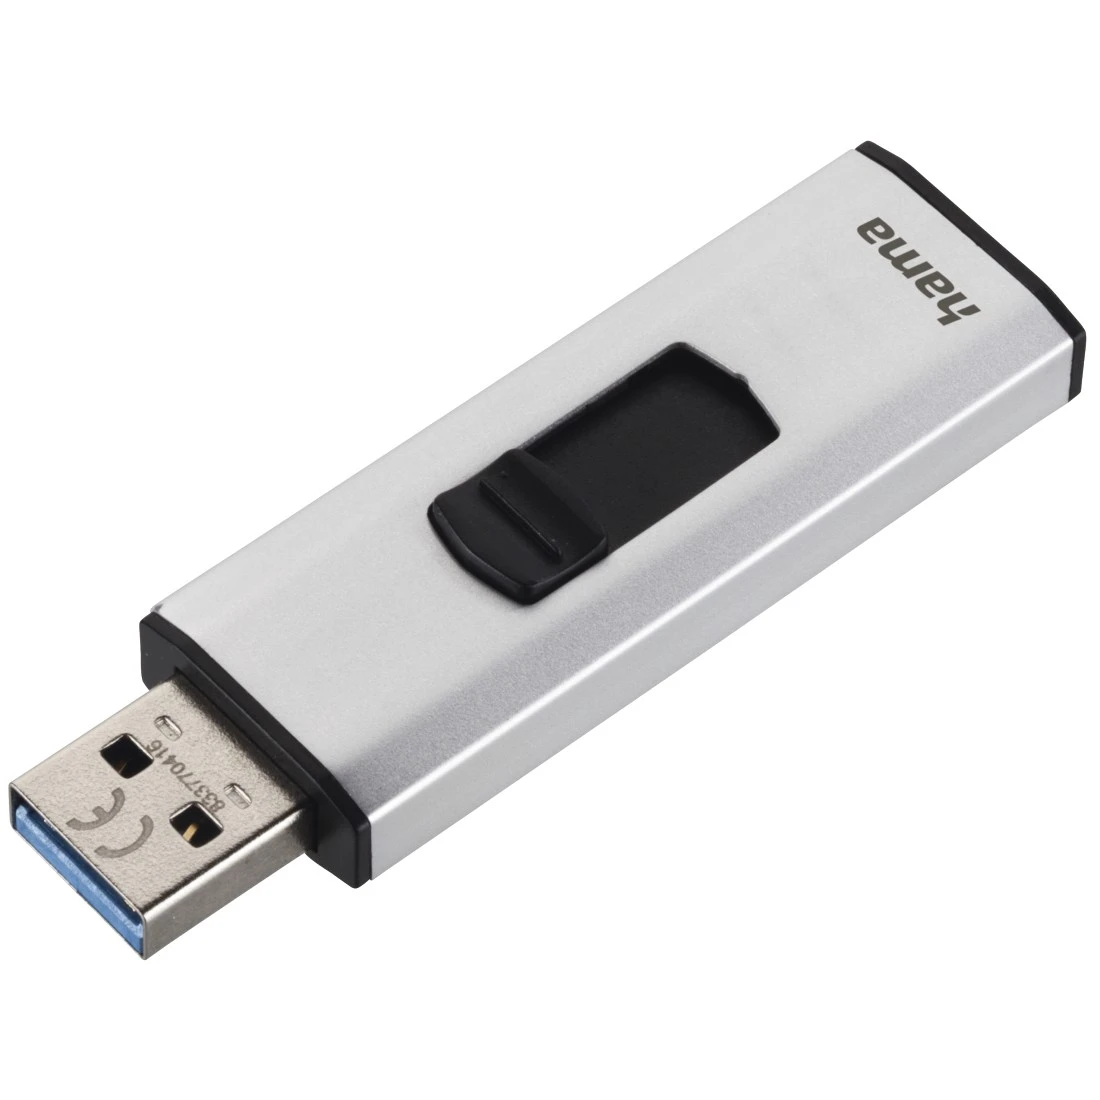 USB-Stick "4Bizz", USB 3.0, 128 GB, 90MB/s, Silber/Schwarz | Hama